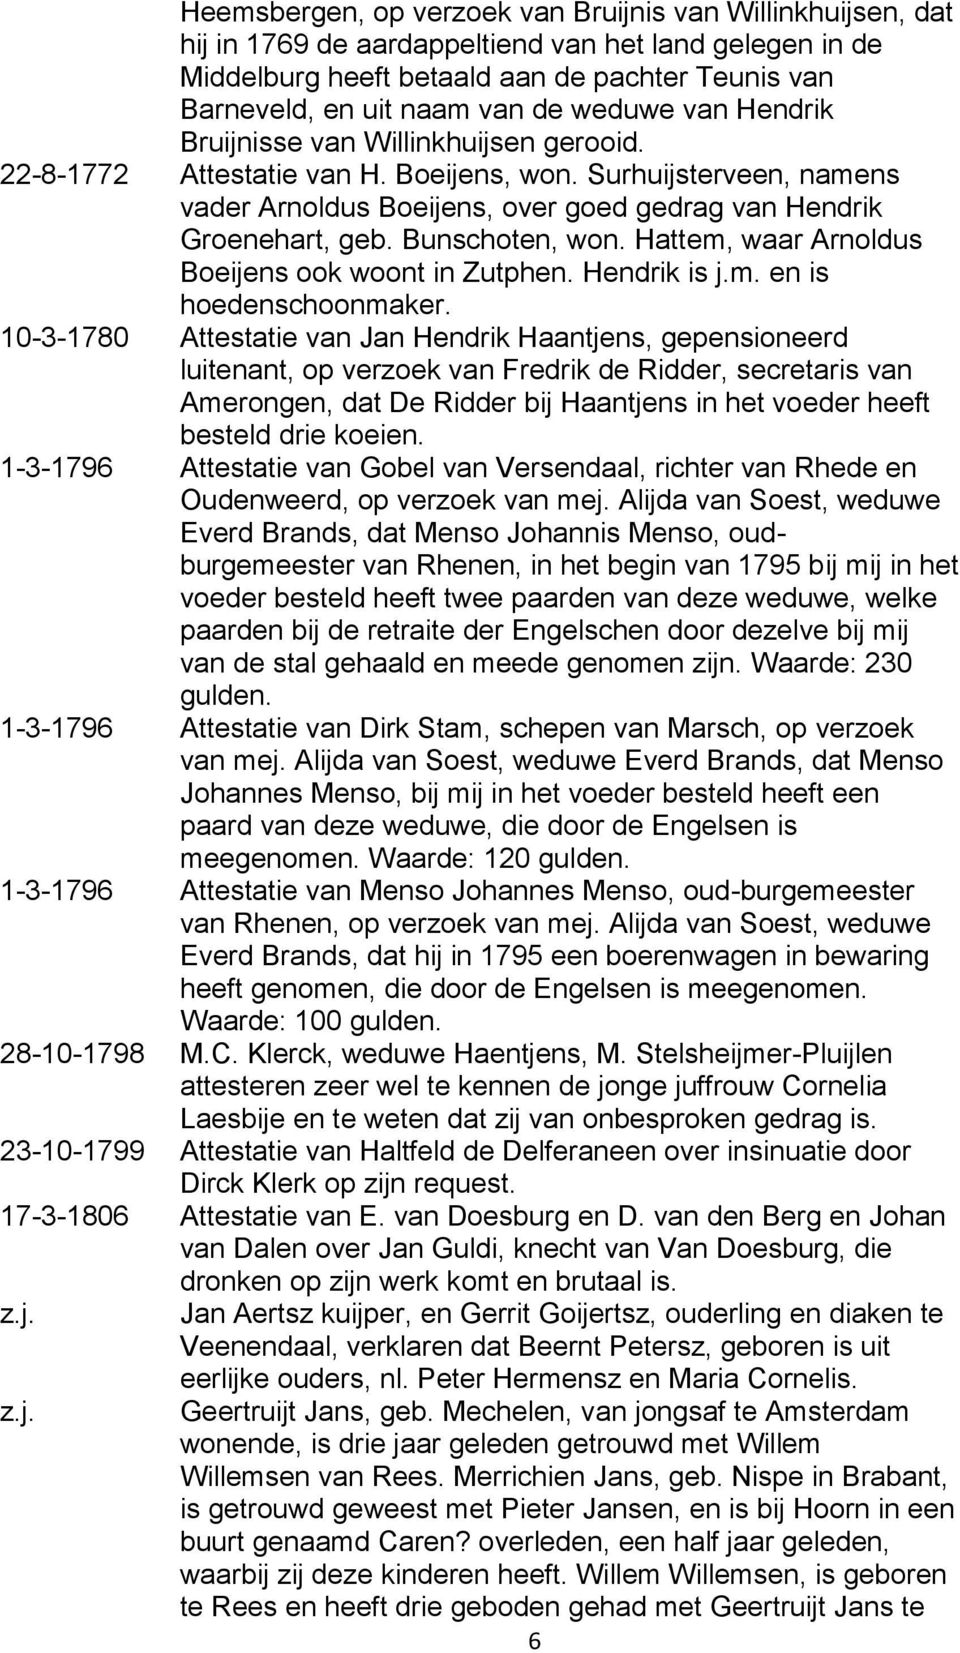 Bunschoten, won. Hattem, waar Arnoldus Boeijens ook woont in Zutphen. Hendrik is j.m. en is hoedenschoonmaker.